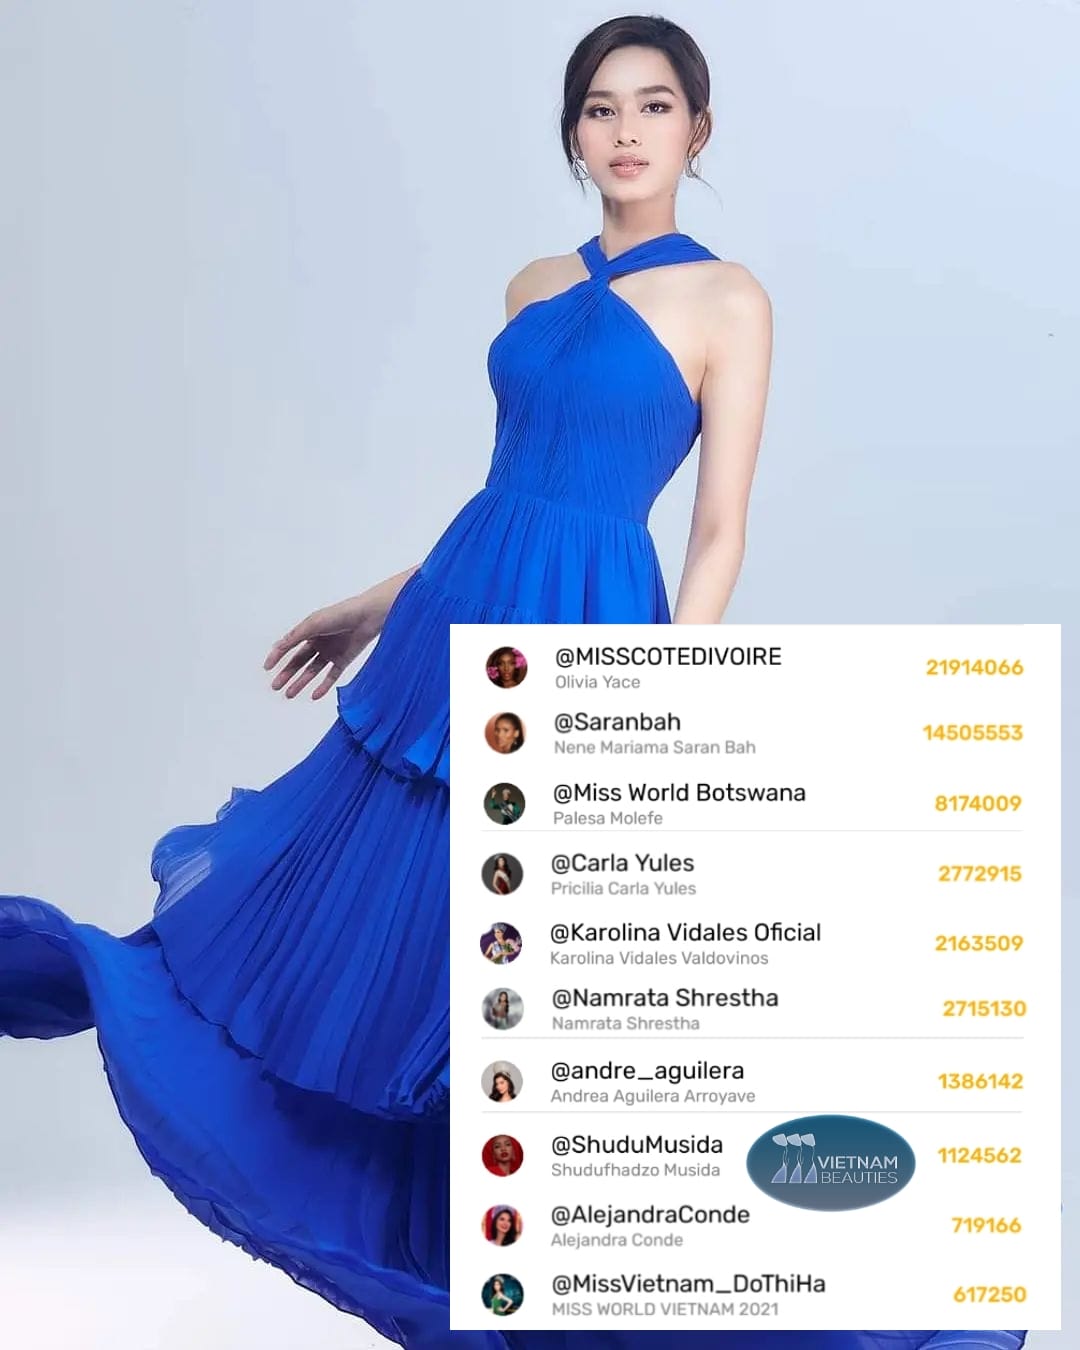 Hoa hậu Đỗ Thị Hà đứng ở vị trí thứ 10 trong danh sách bình chọn trên ứng dụng Mobstar